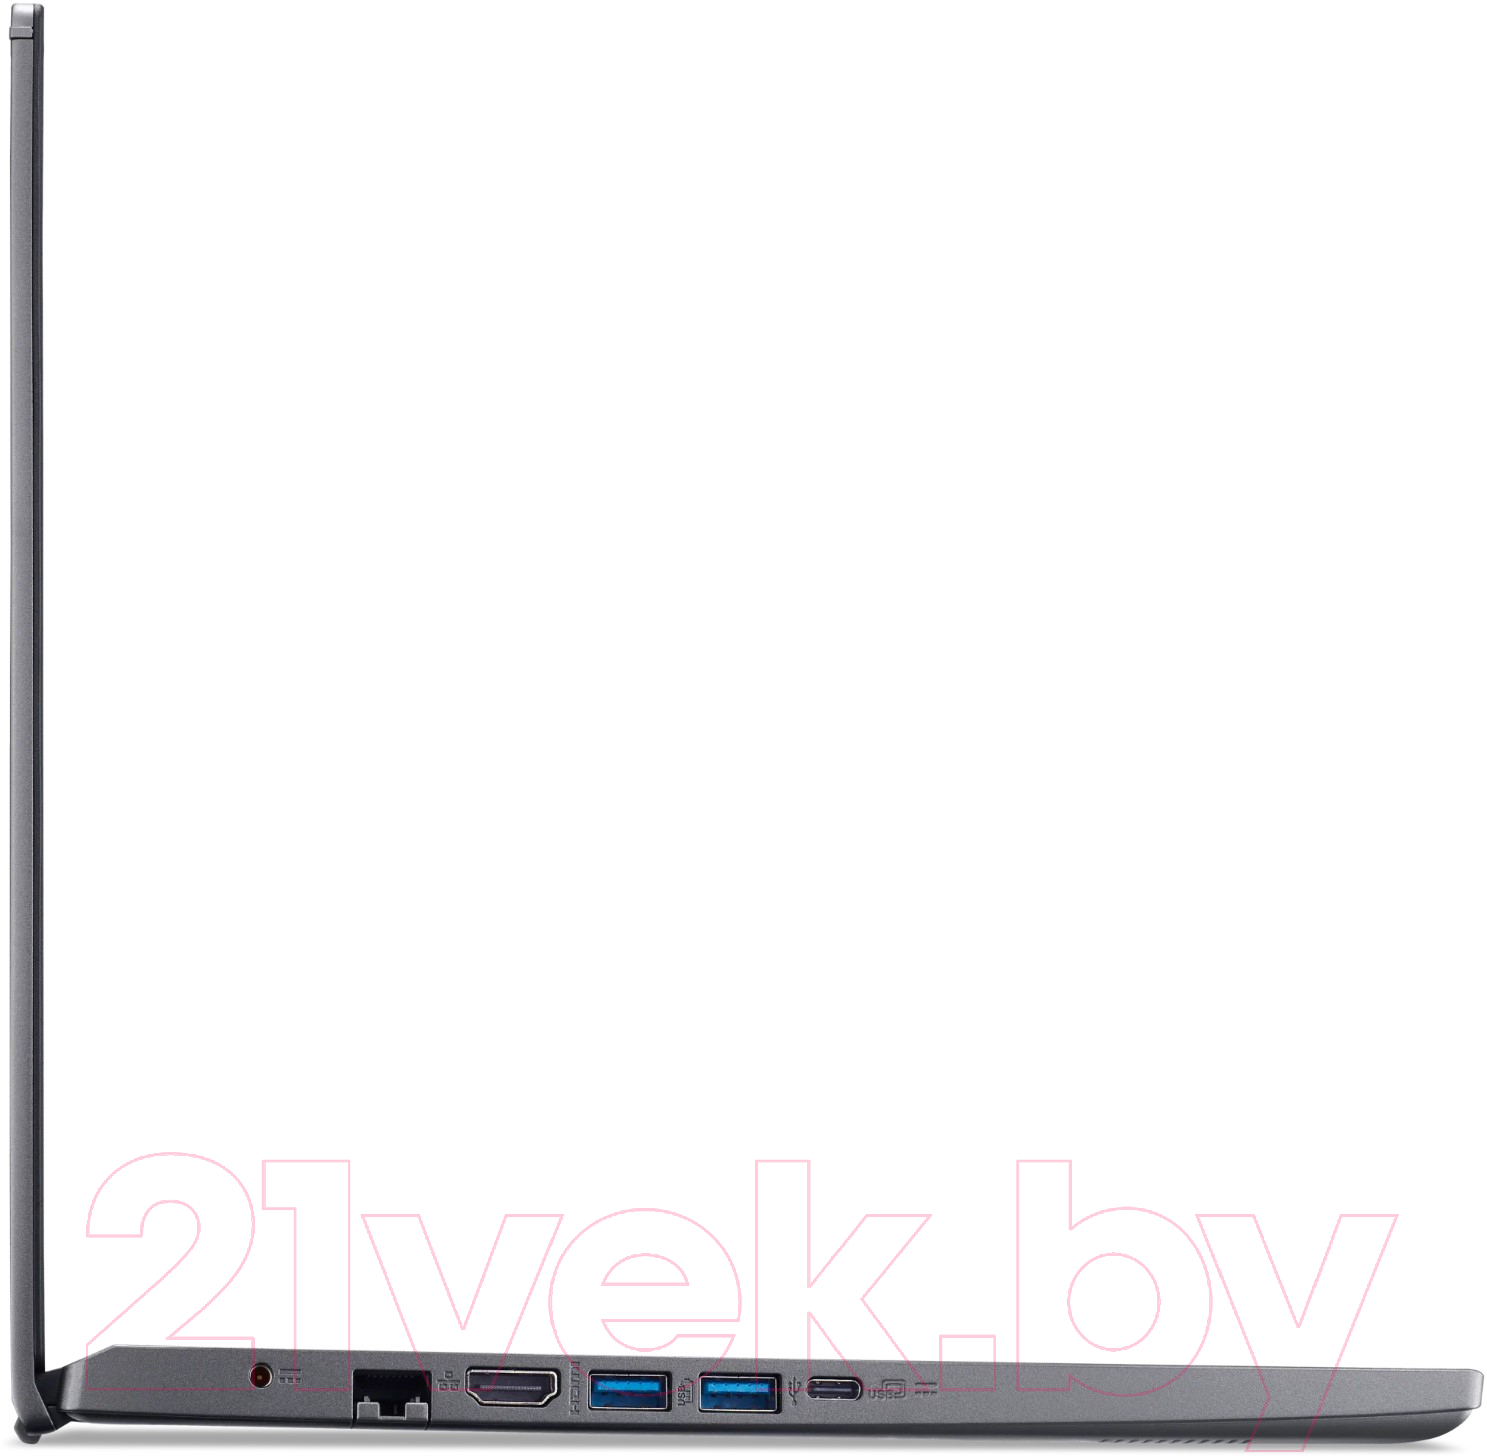 Ноутбук Acer Aspire 5 A515-57-52NV (NX.K3KER.009)